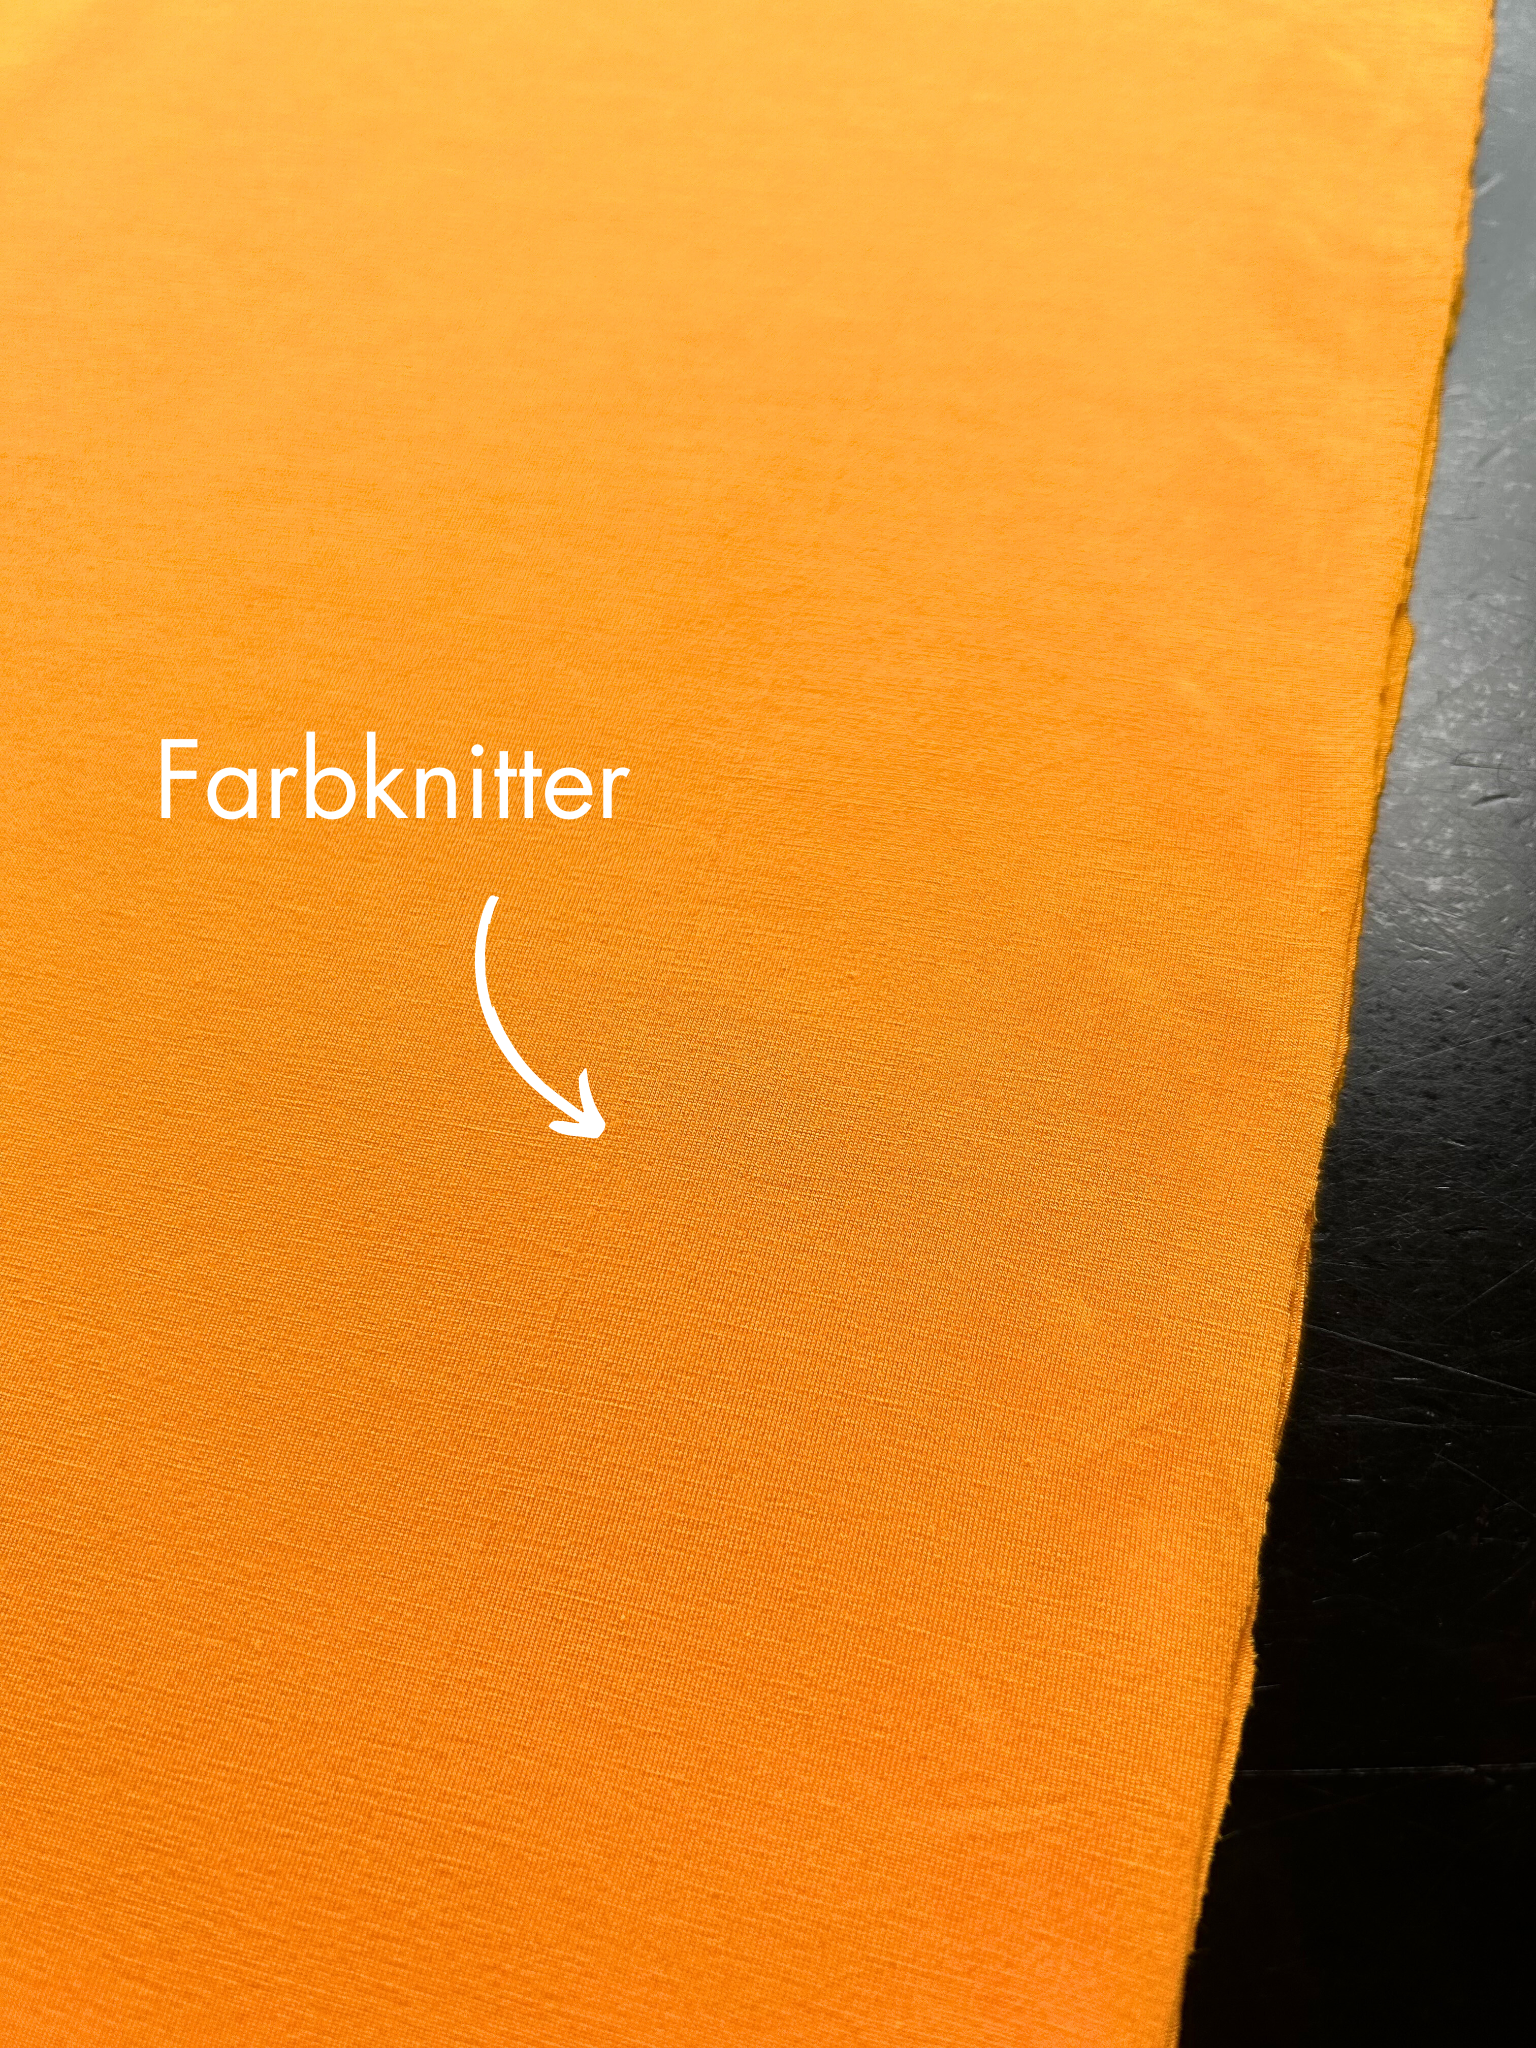 Farbknitter.png